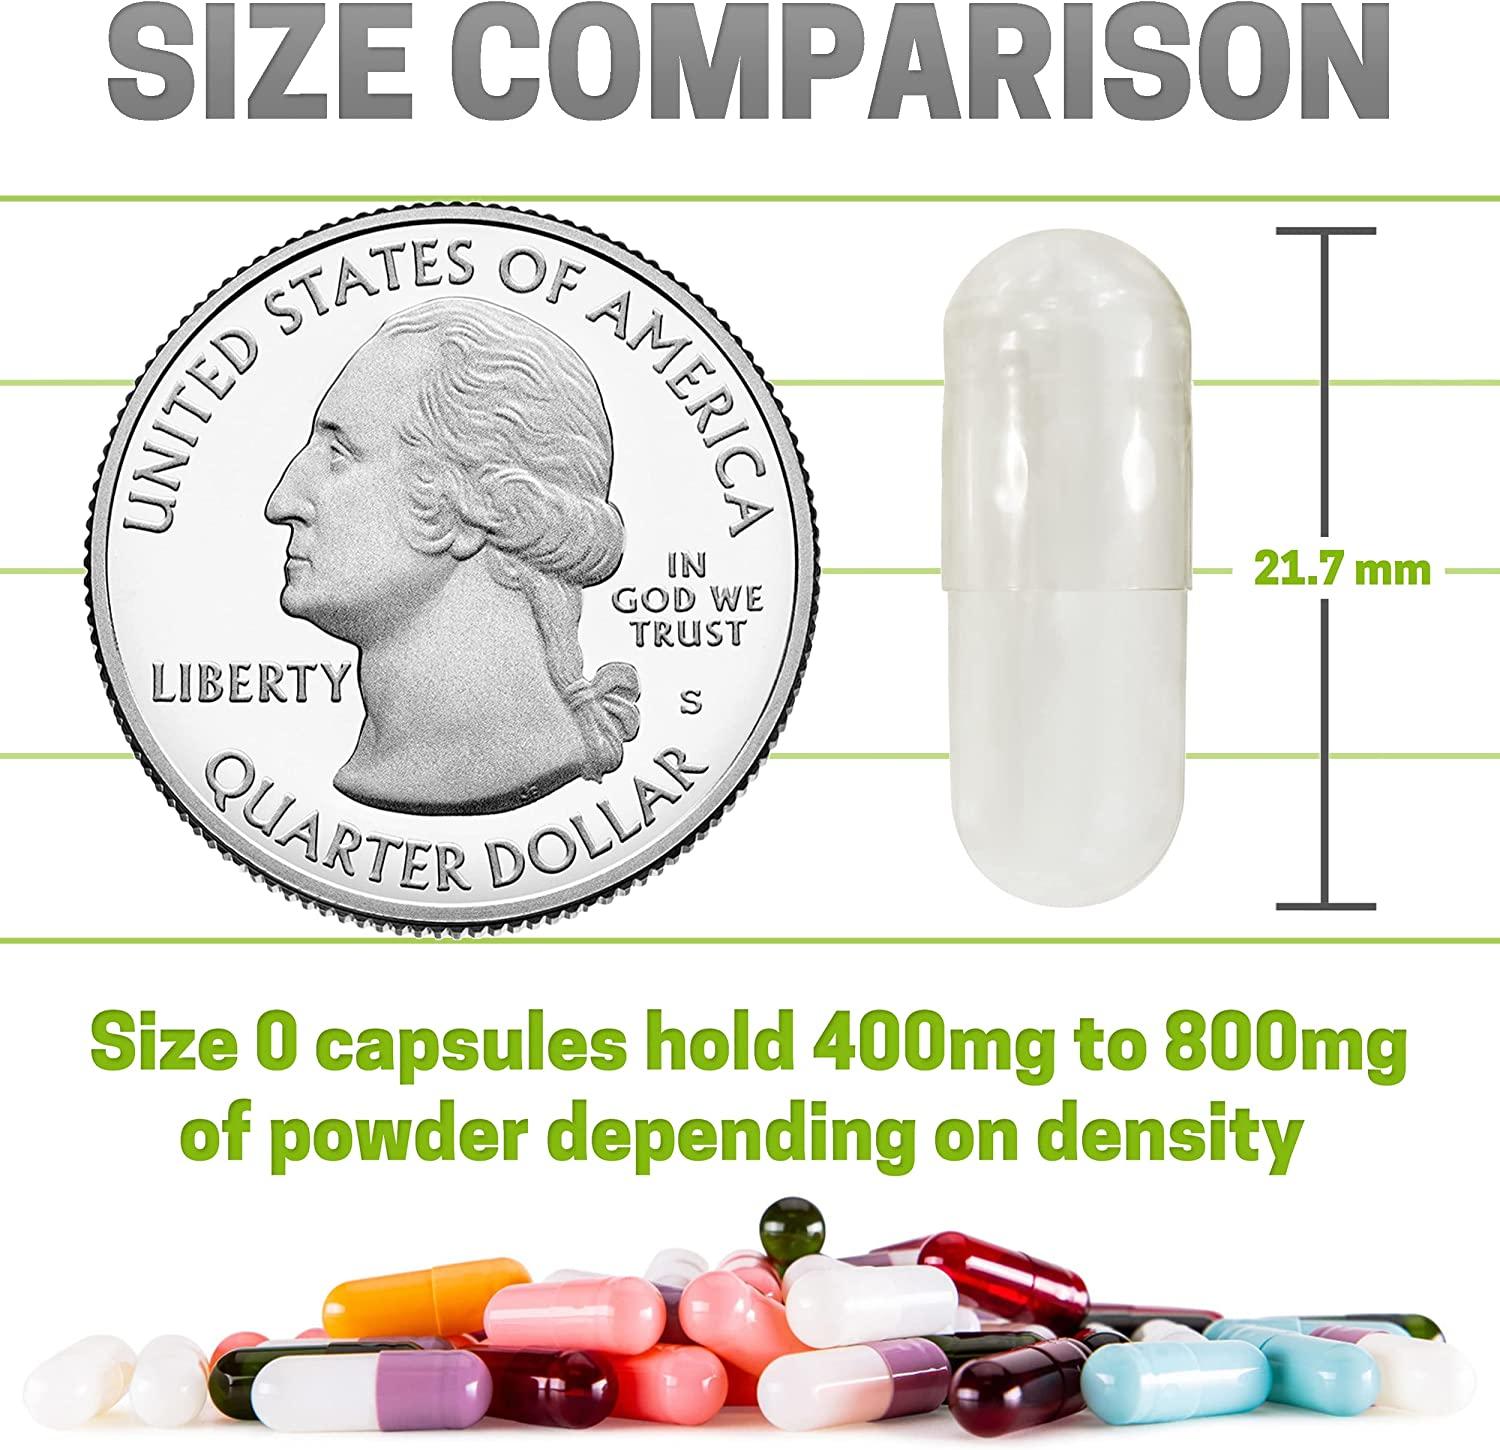 empty capsule sizes